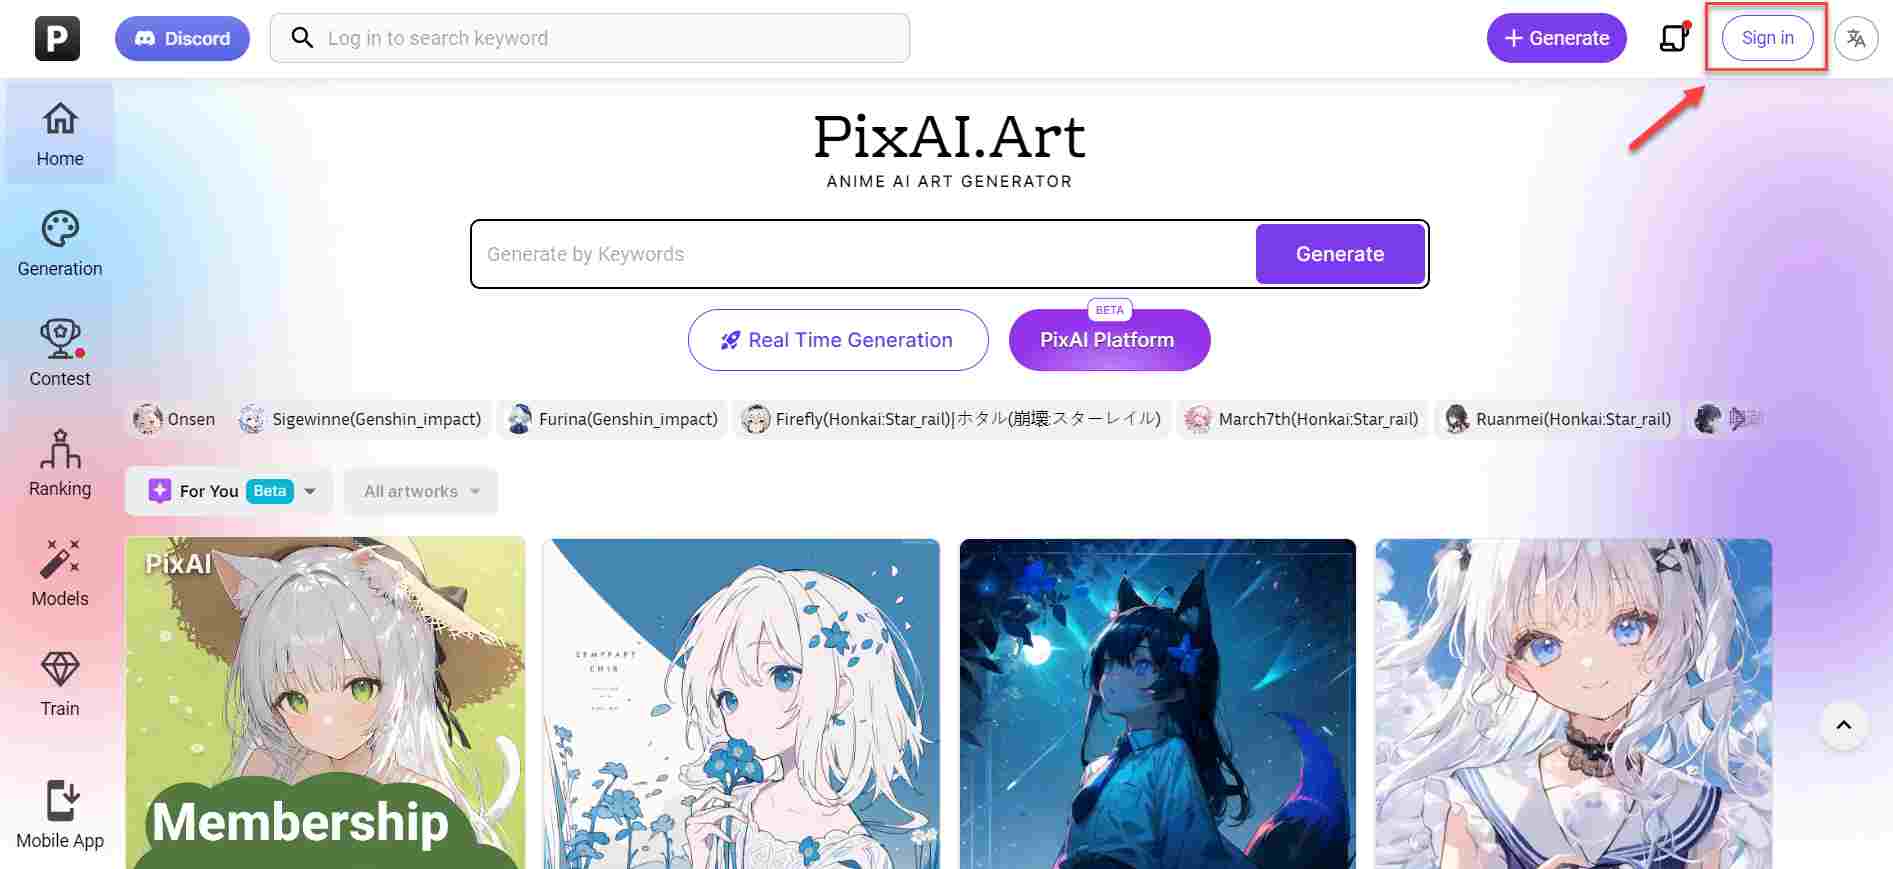  pixai.art-Anmeldeseite mit hervorgehobener Anmeldeschaltfläche 